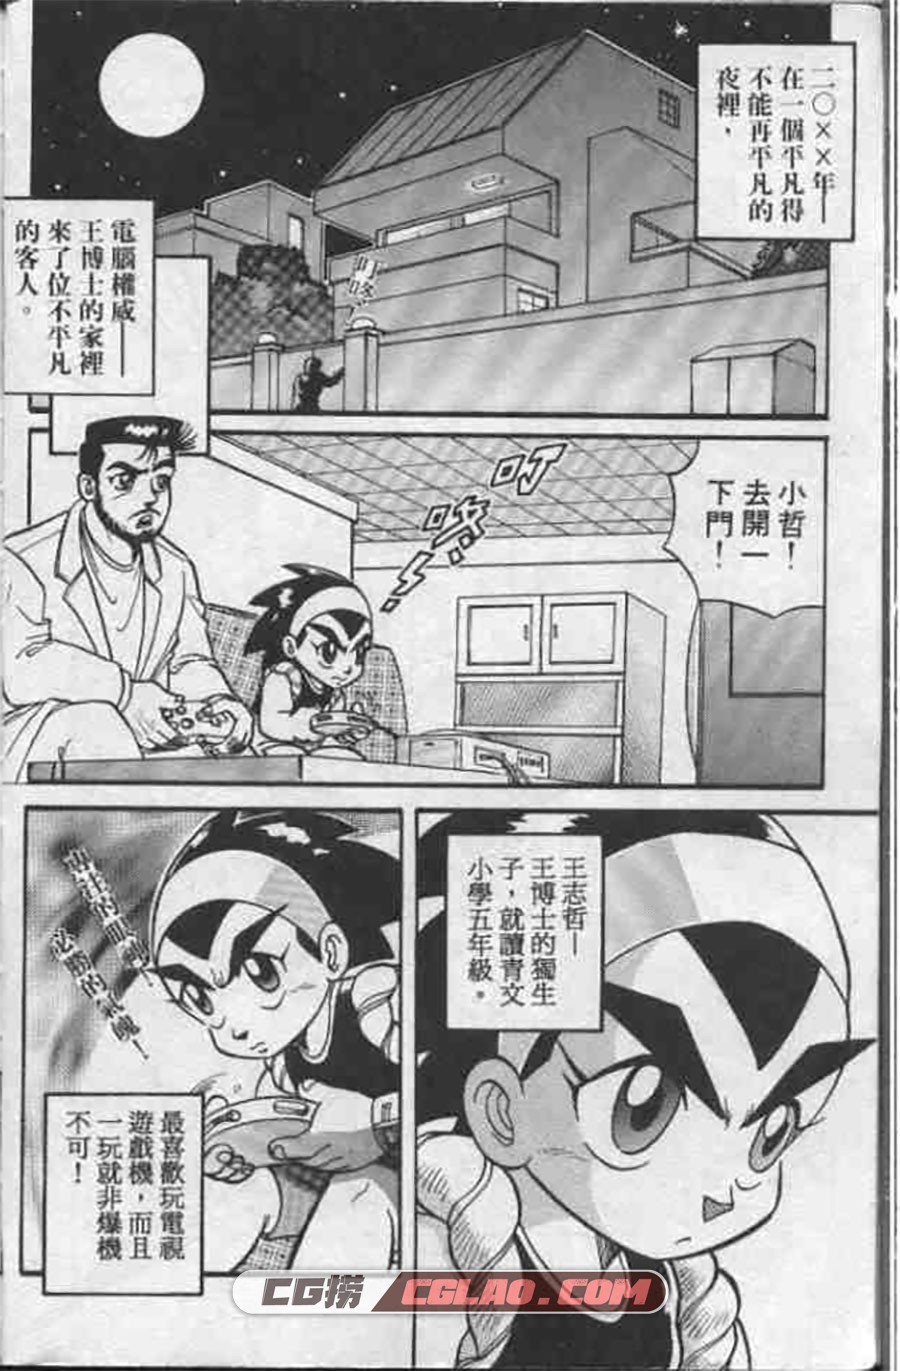 折纸战士 周显宗 1-22册 漫画全集下载 百度网盘,004.jpg